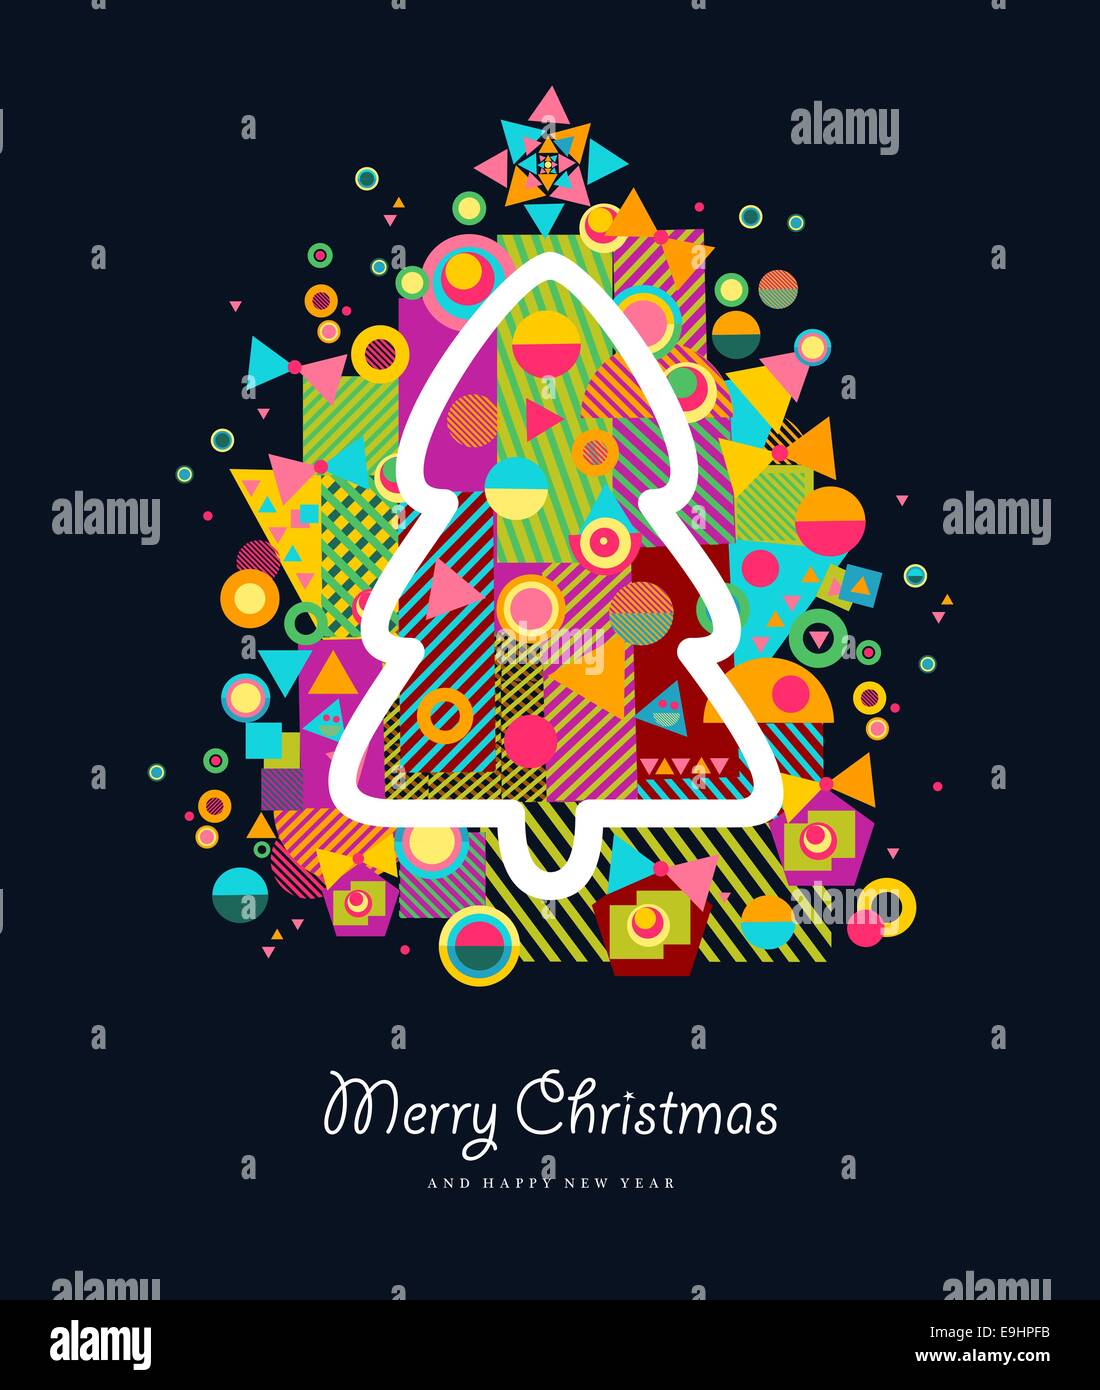 Feliz Navidad colorido retro con árbol de Navidad, Tarjetas de felicitación y elementos abstractos splash. Archivo vectorial EPS10 con transparencia la Foto de stock